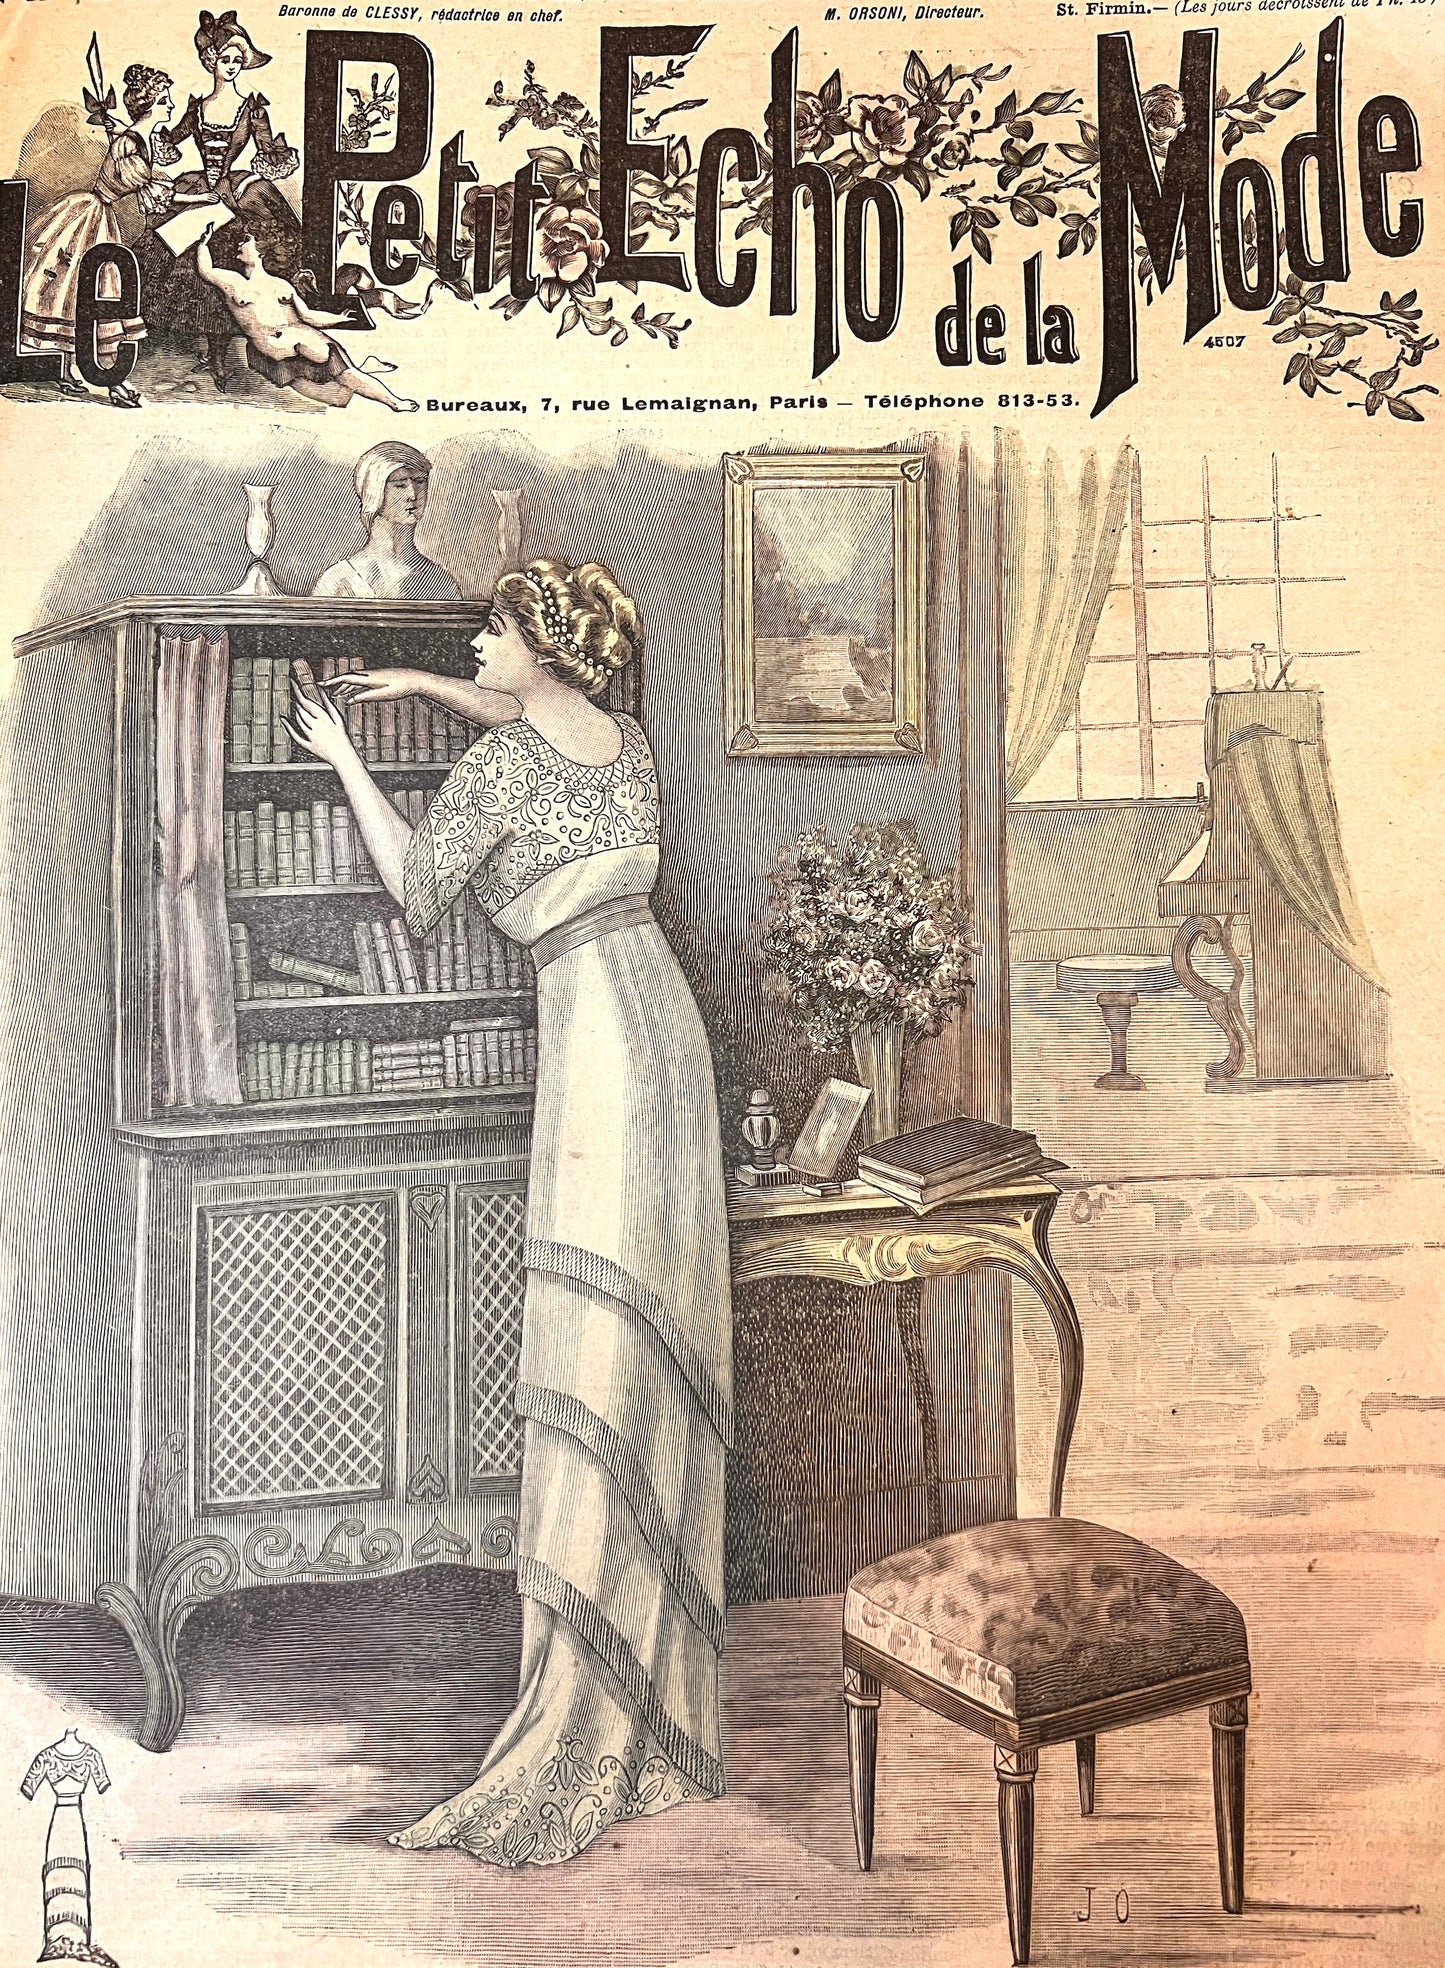 1910 French Magazine Le Petit Echo de la Mode